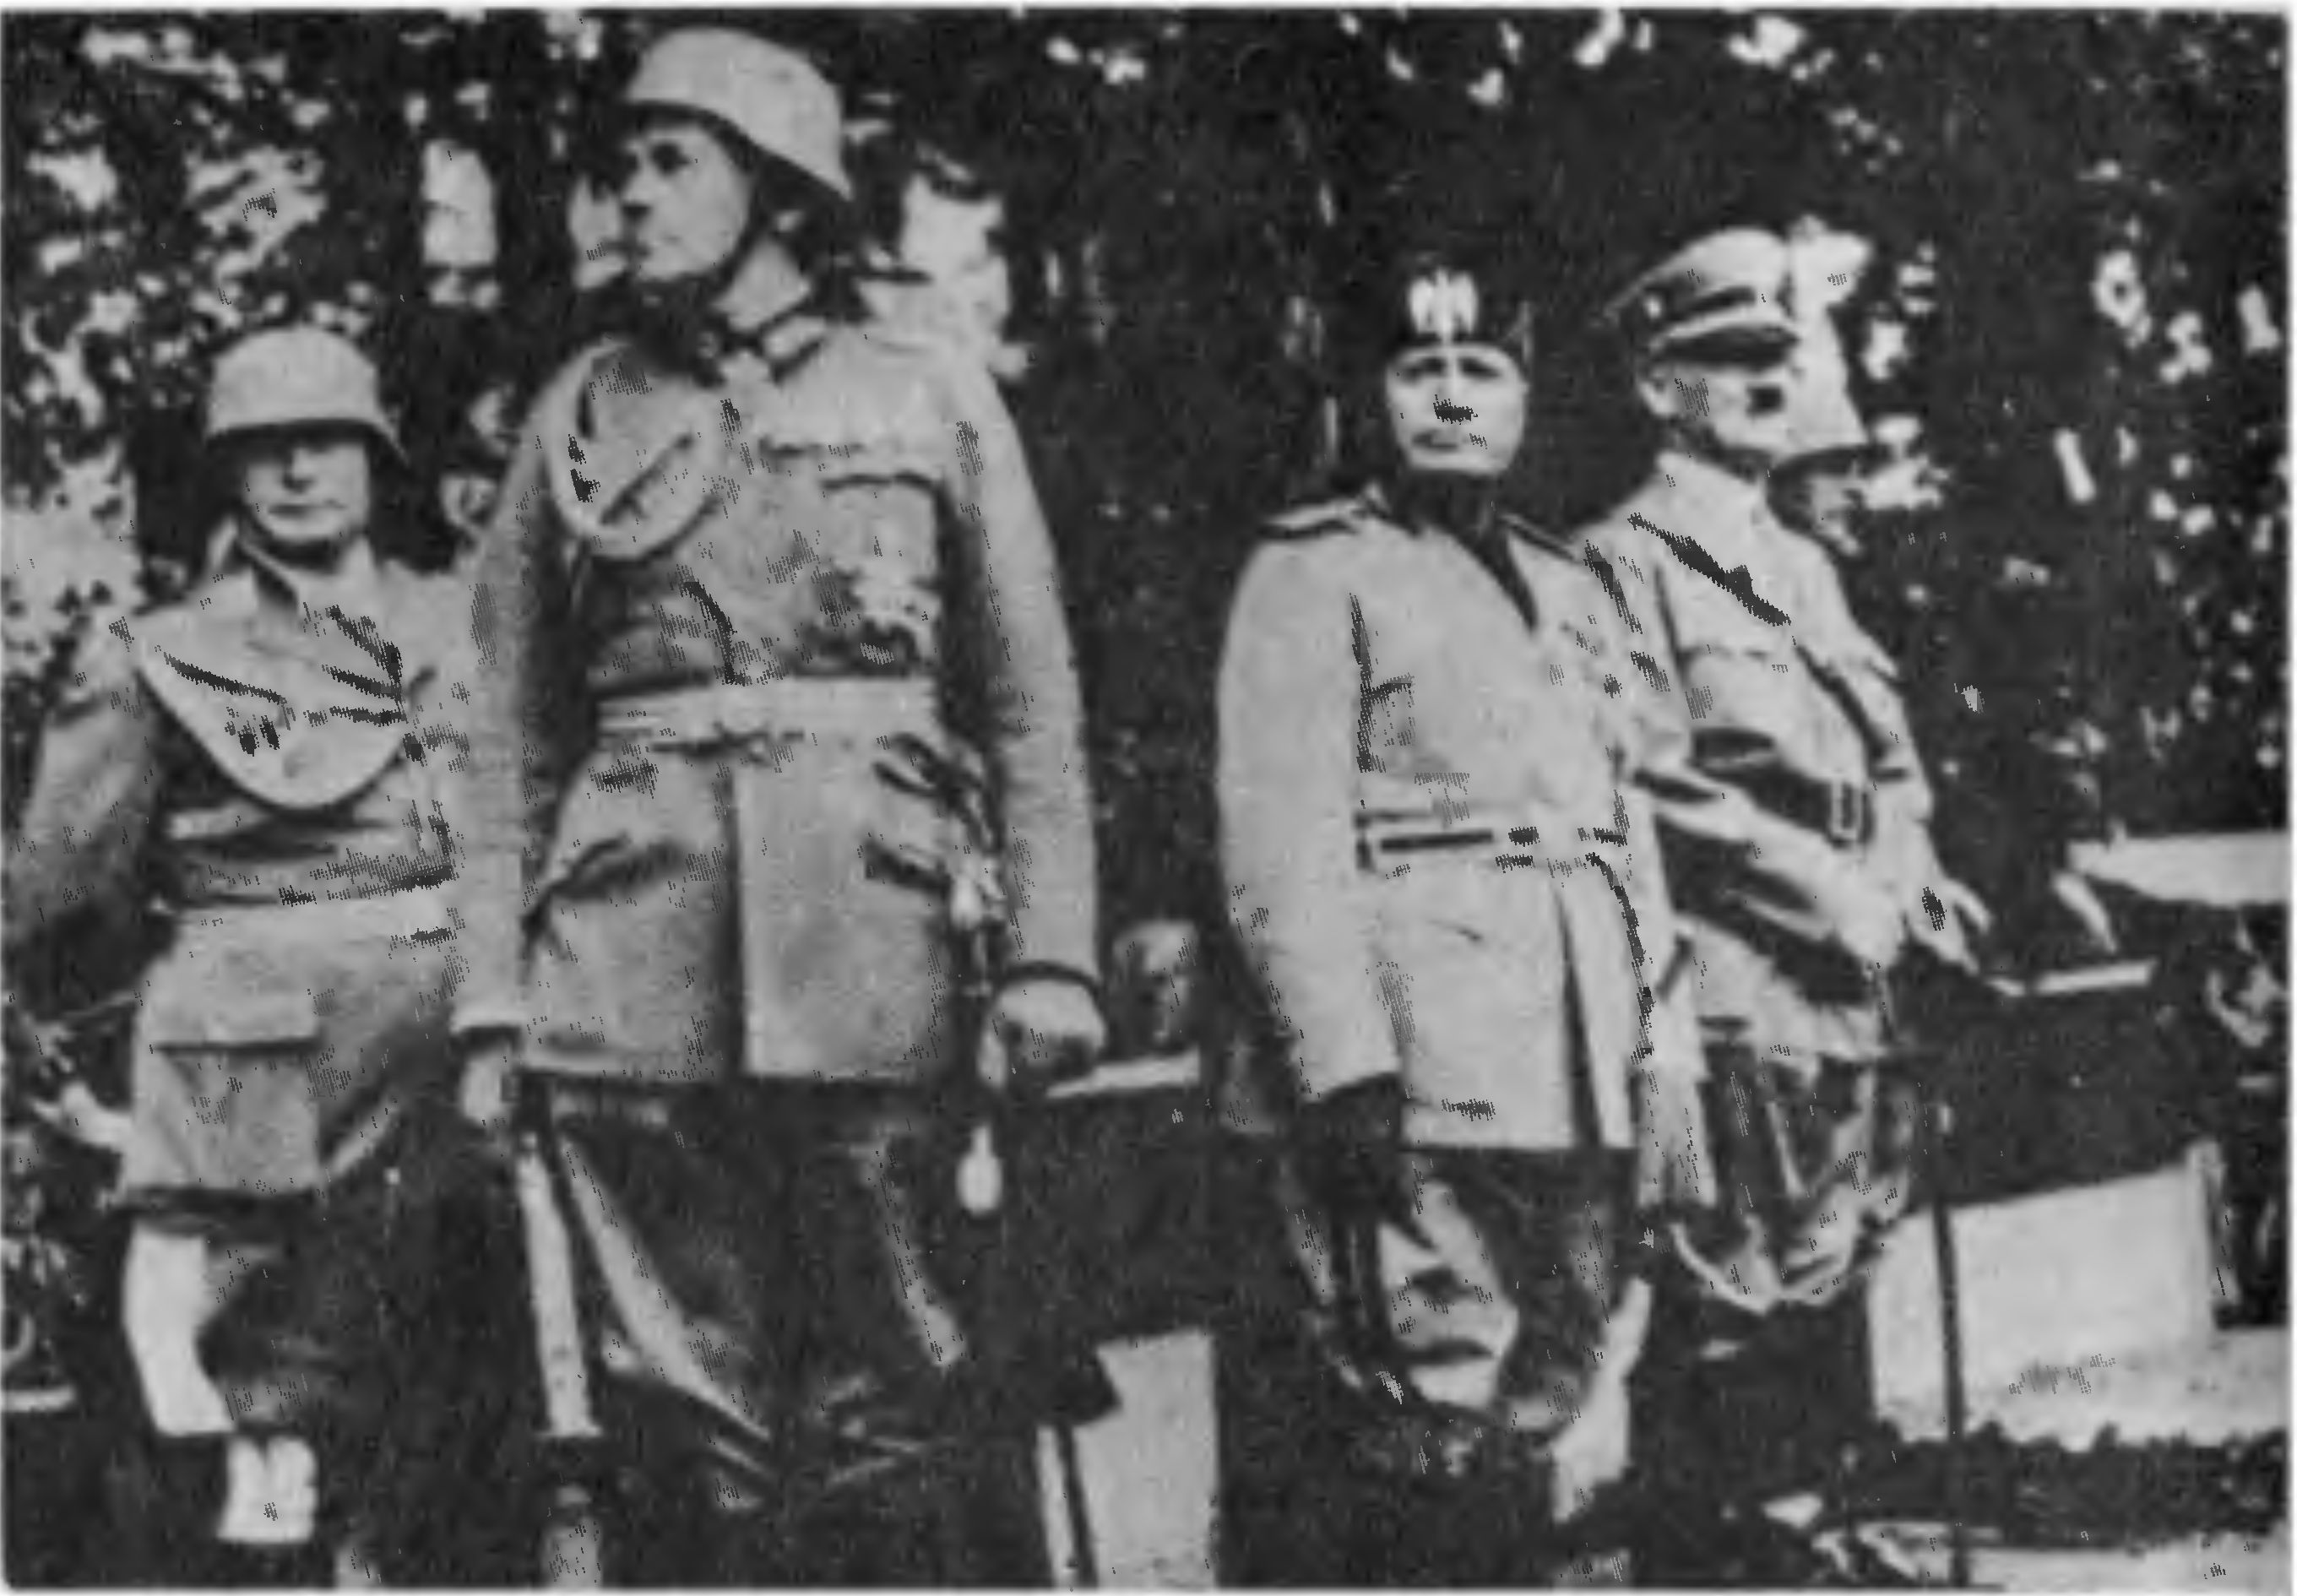 А. Гитлер, Б. Муссолини, В. Бломберг, Г. Геринг. Берлин, 29 сентября 1937 г.